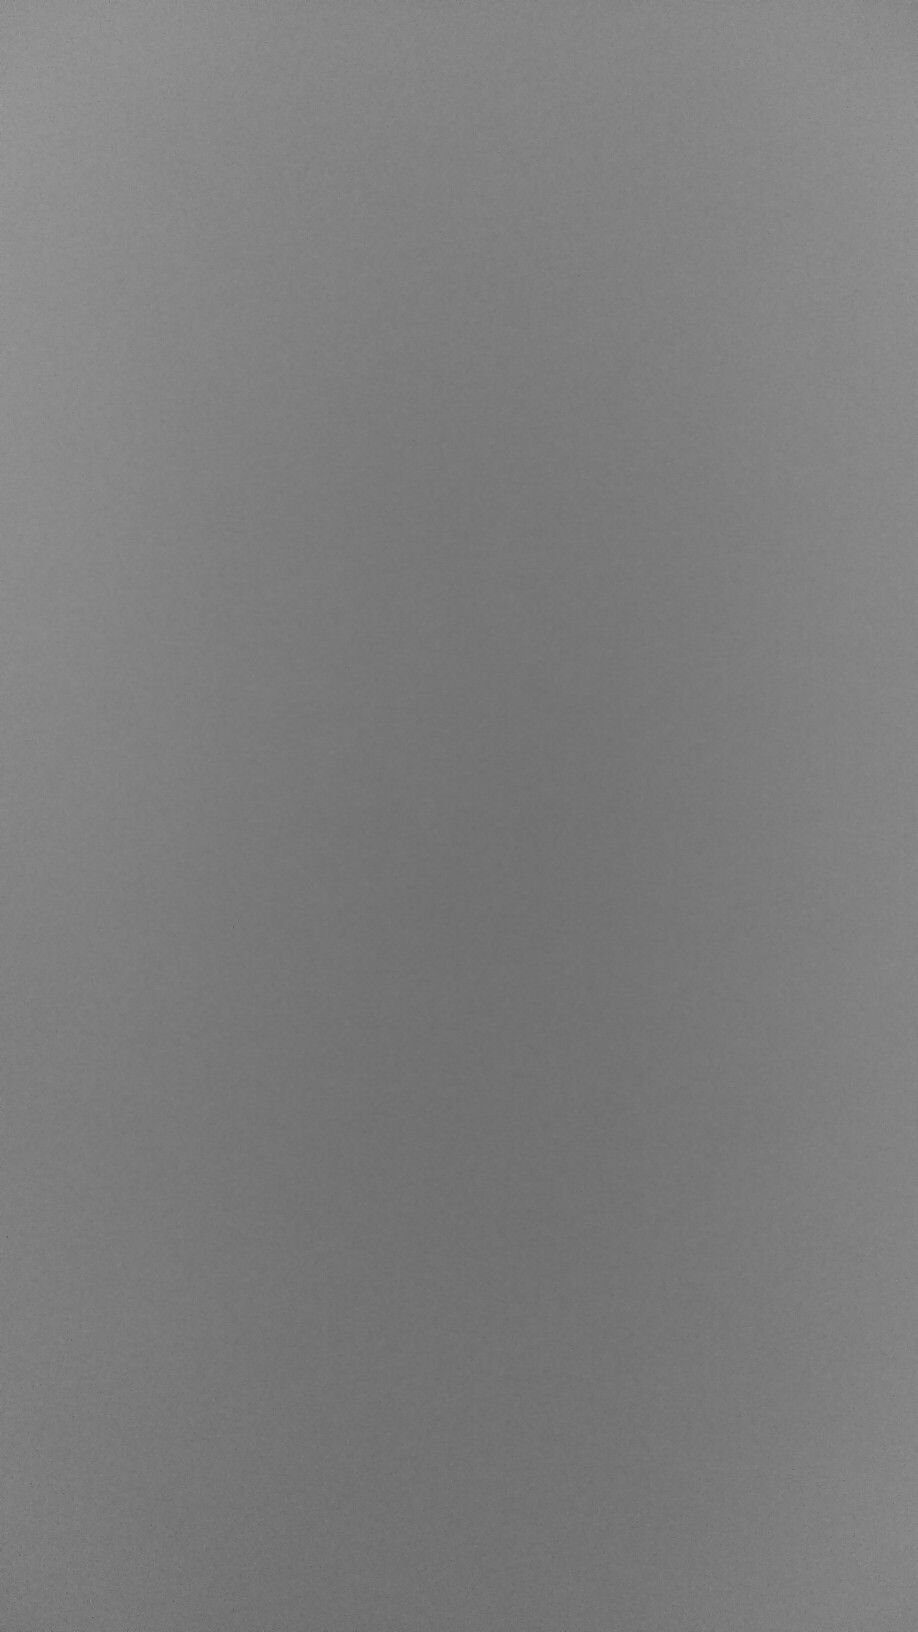 Plain Grey Wallpapers - Top Những Hình Ảnh Đẹp